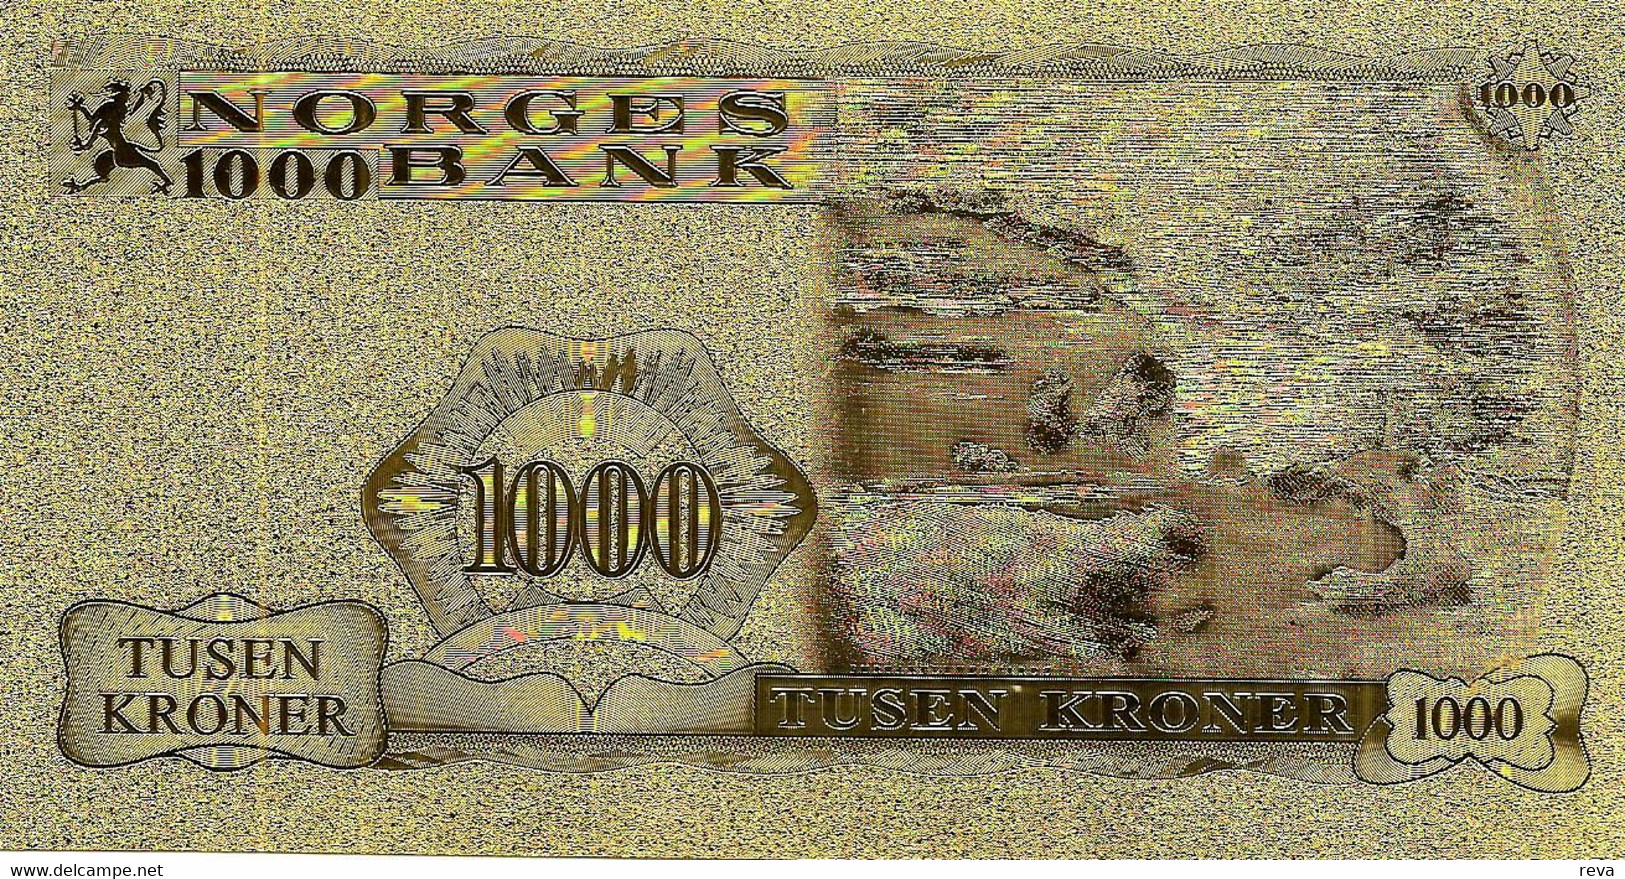 NORWAY 1000 KRONER GOLD FOIL TEST NOTE EMBLEM FRONT LANDSCAPE BACK ND(2000's) P? UNC READ DESCRIPTION !! - Norway